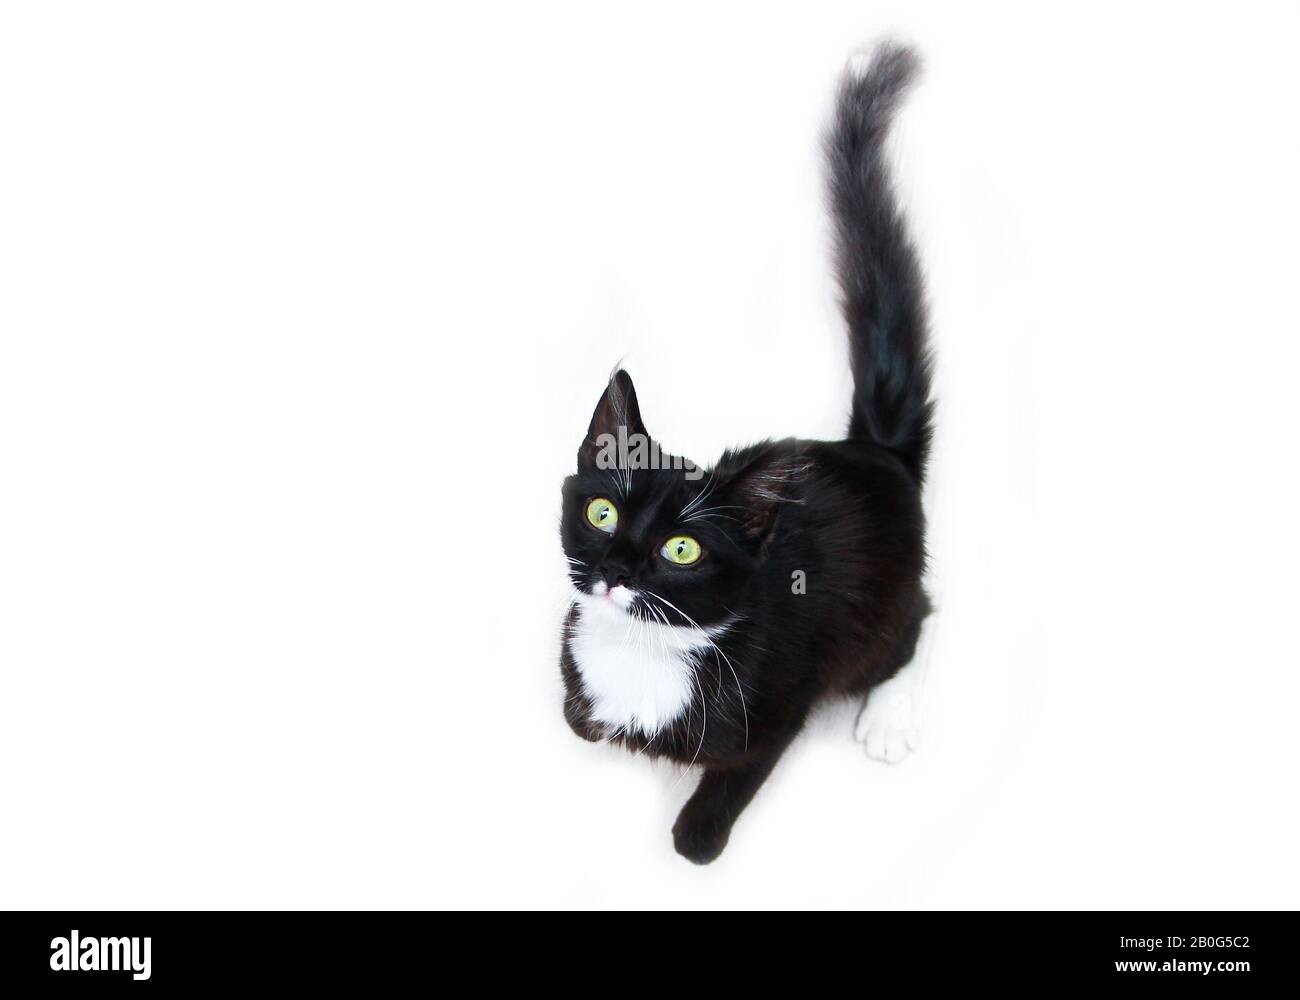 Die süße schwarze Katze mit grünen Augen auf weißem Hintergrund, die neugierig aufblickt. Süß und glücklich aussehen. Stockfoto